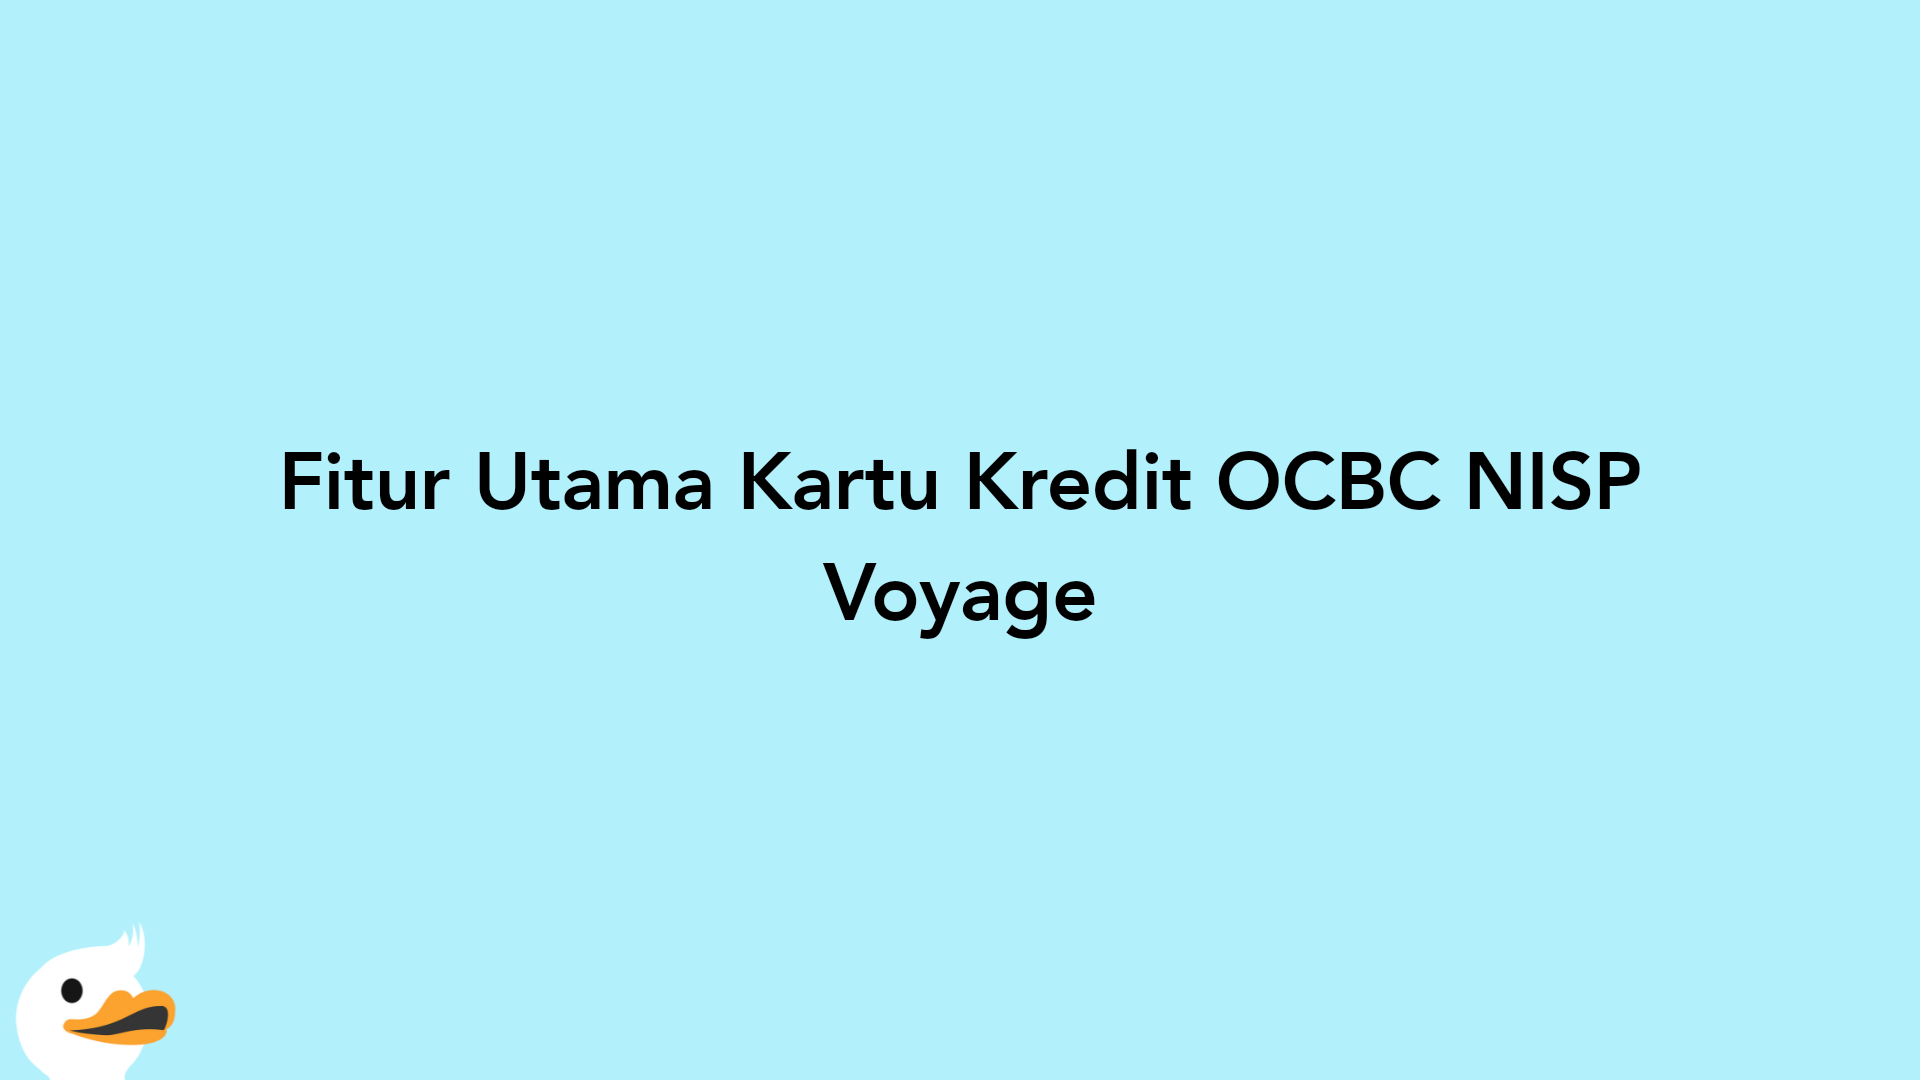 Fitur Utama Kartu Kredit OCBC NISP Voyage